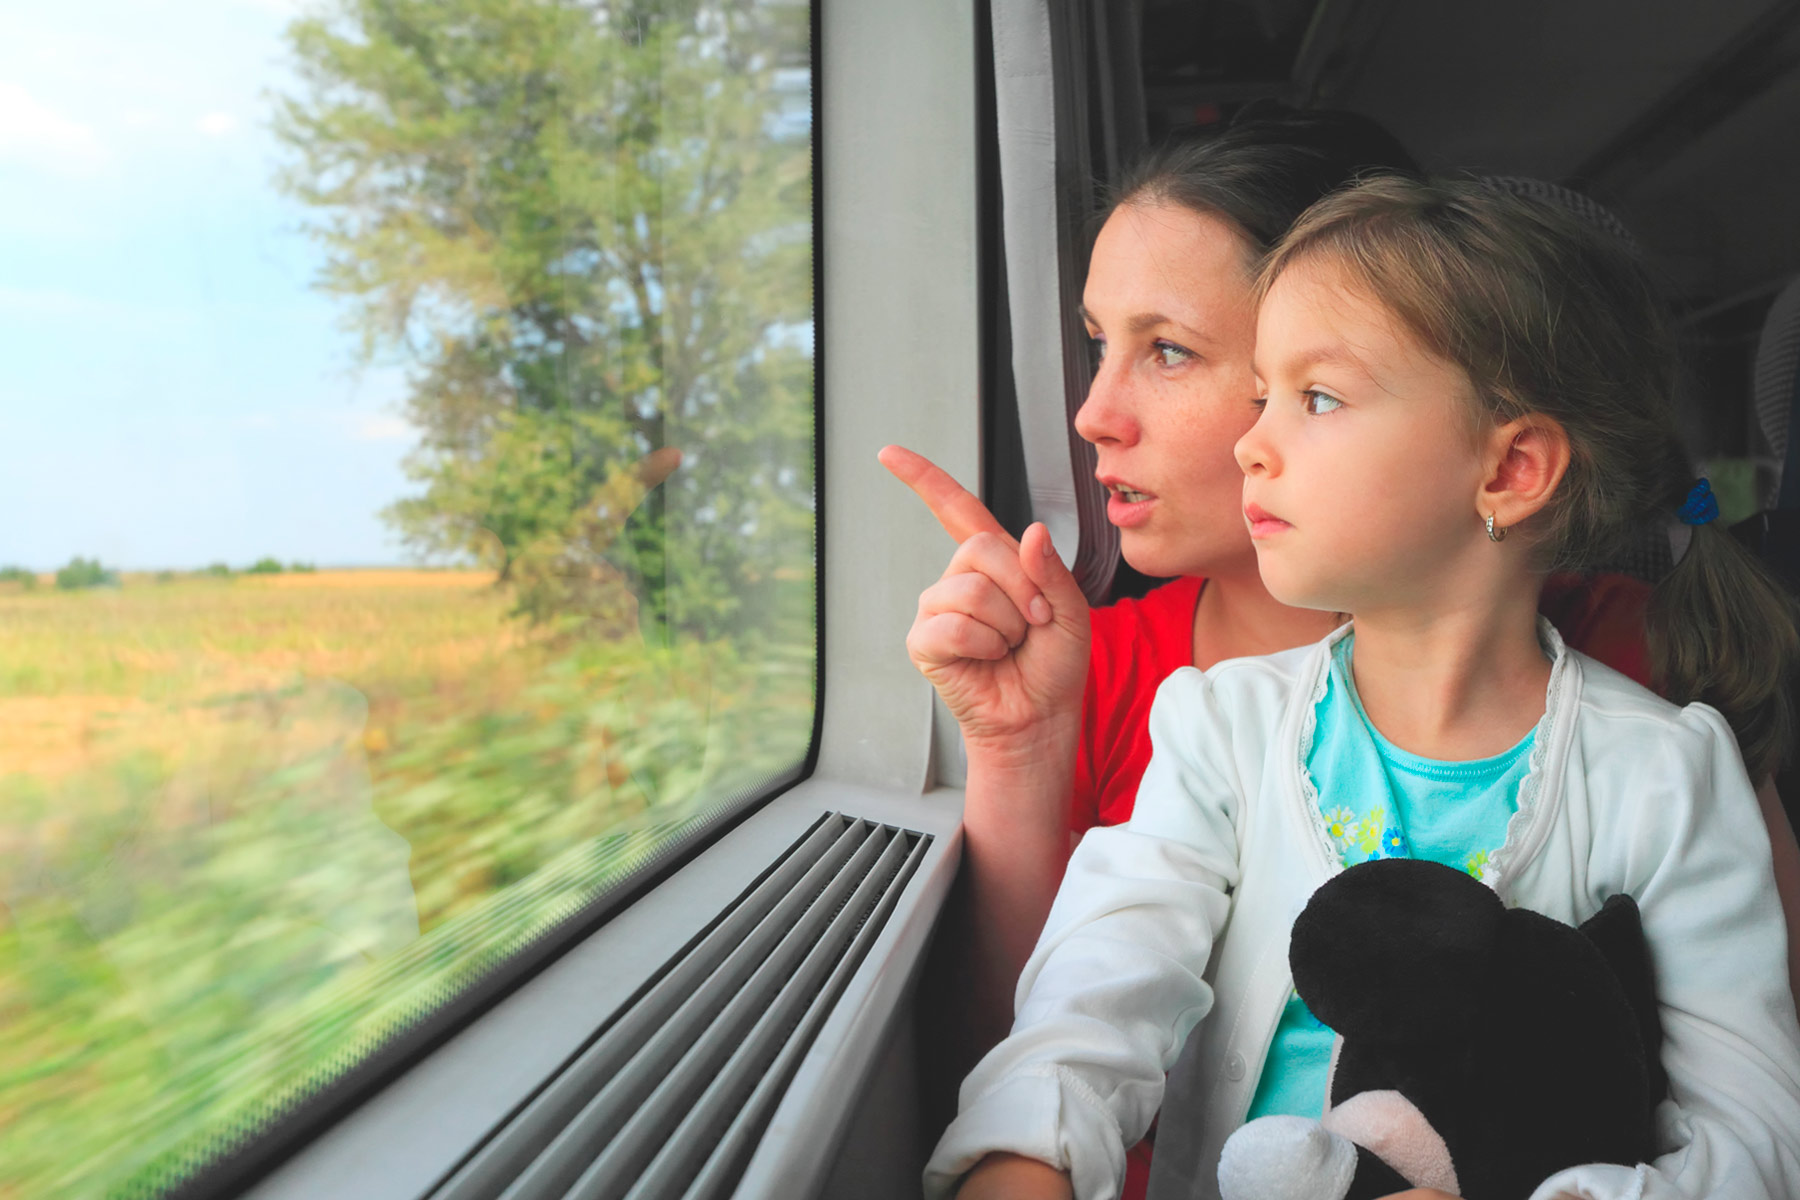 чем занять ребенка в поезде путешествии поездке